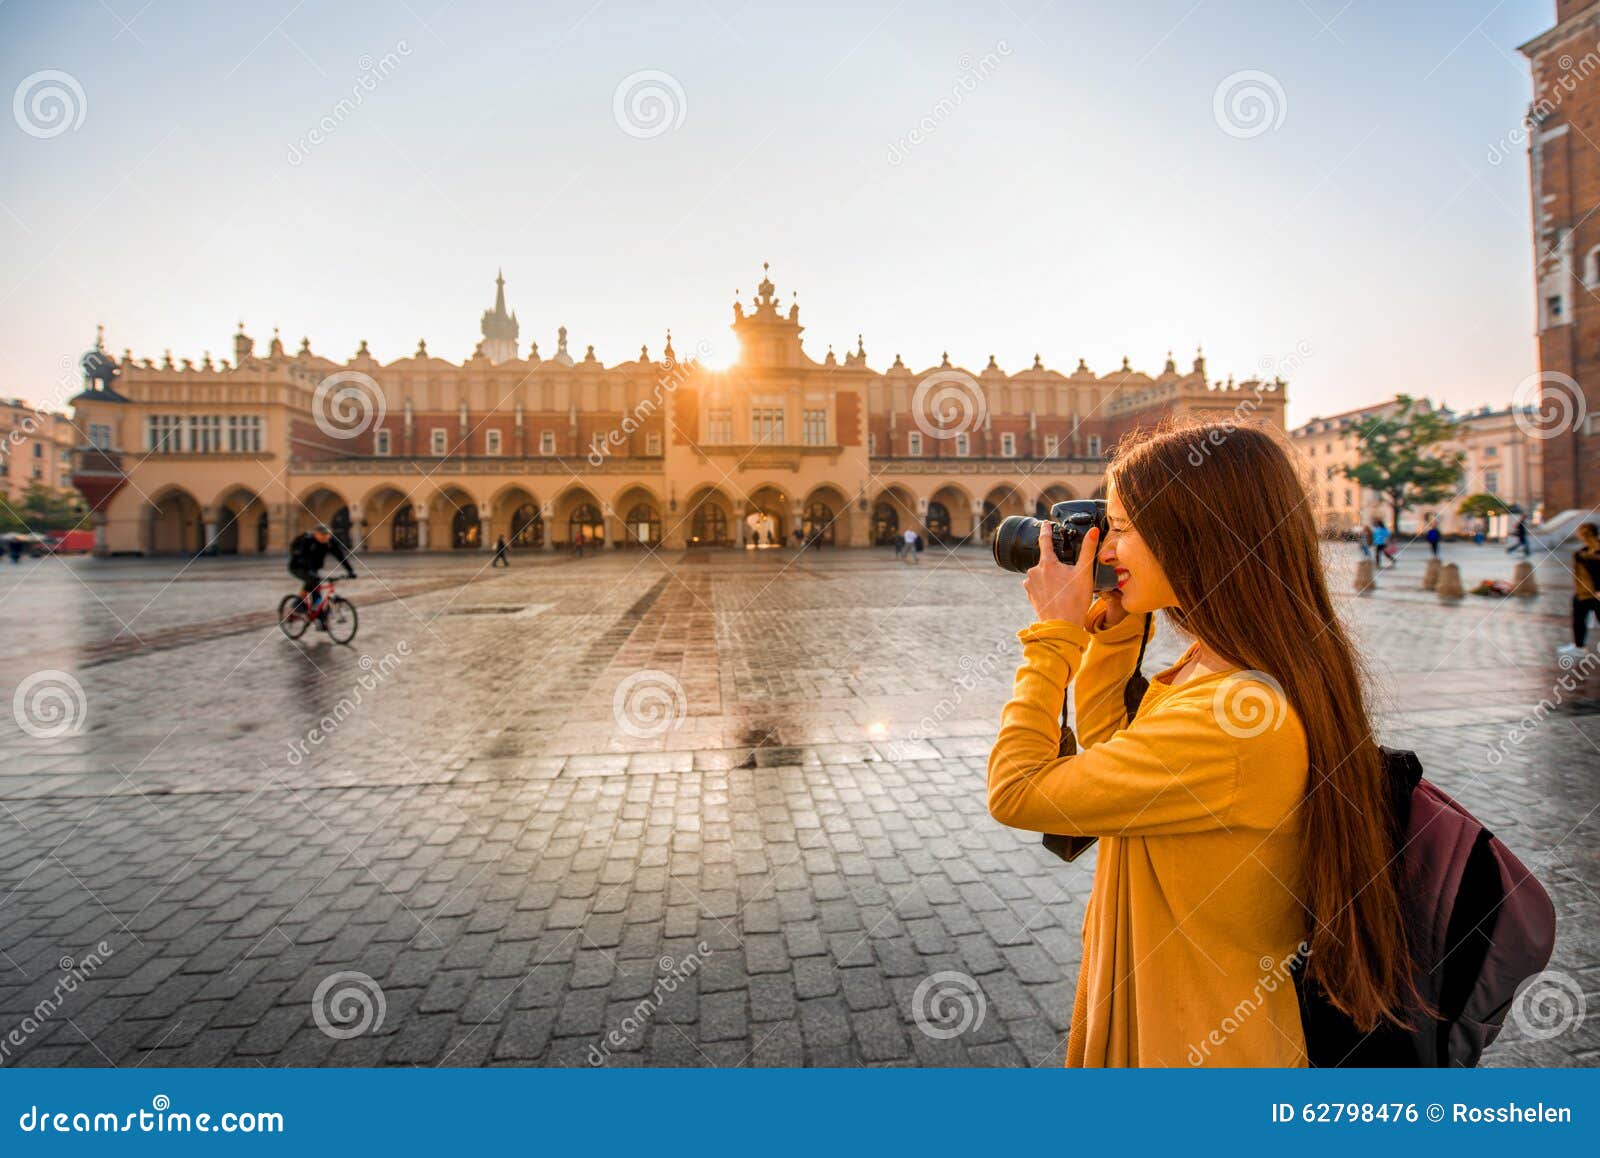 female tourist in the center of krakow